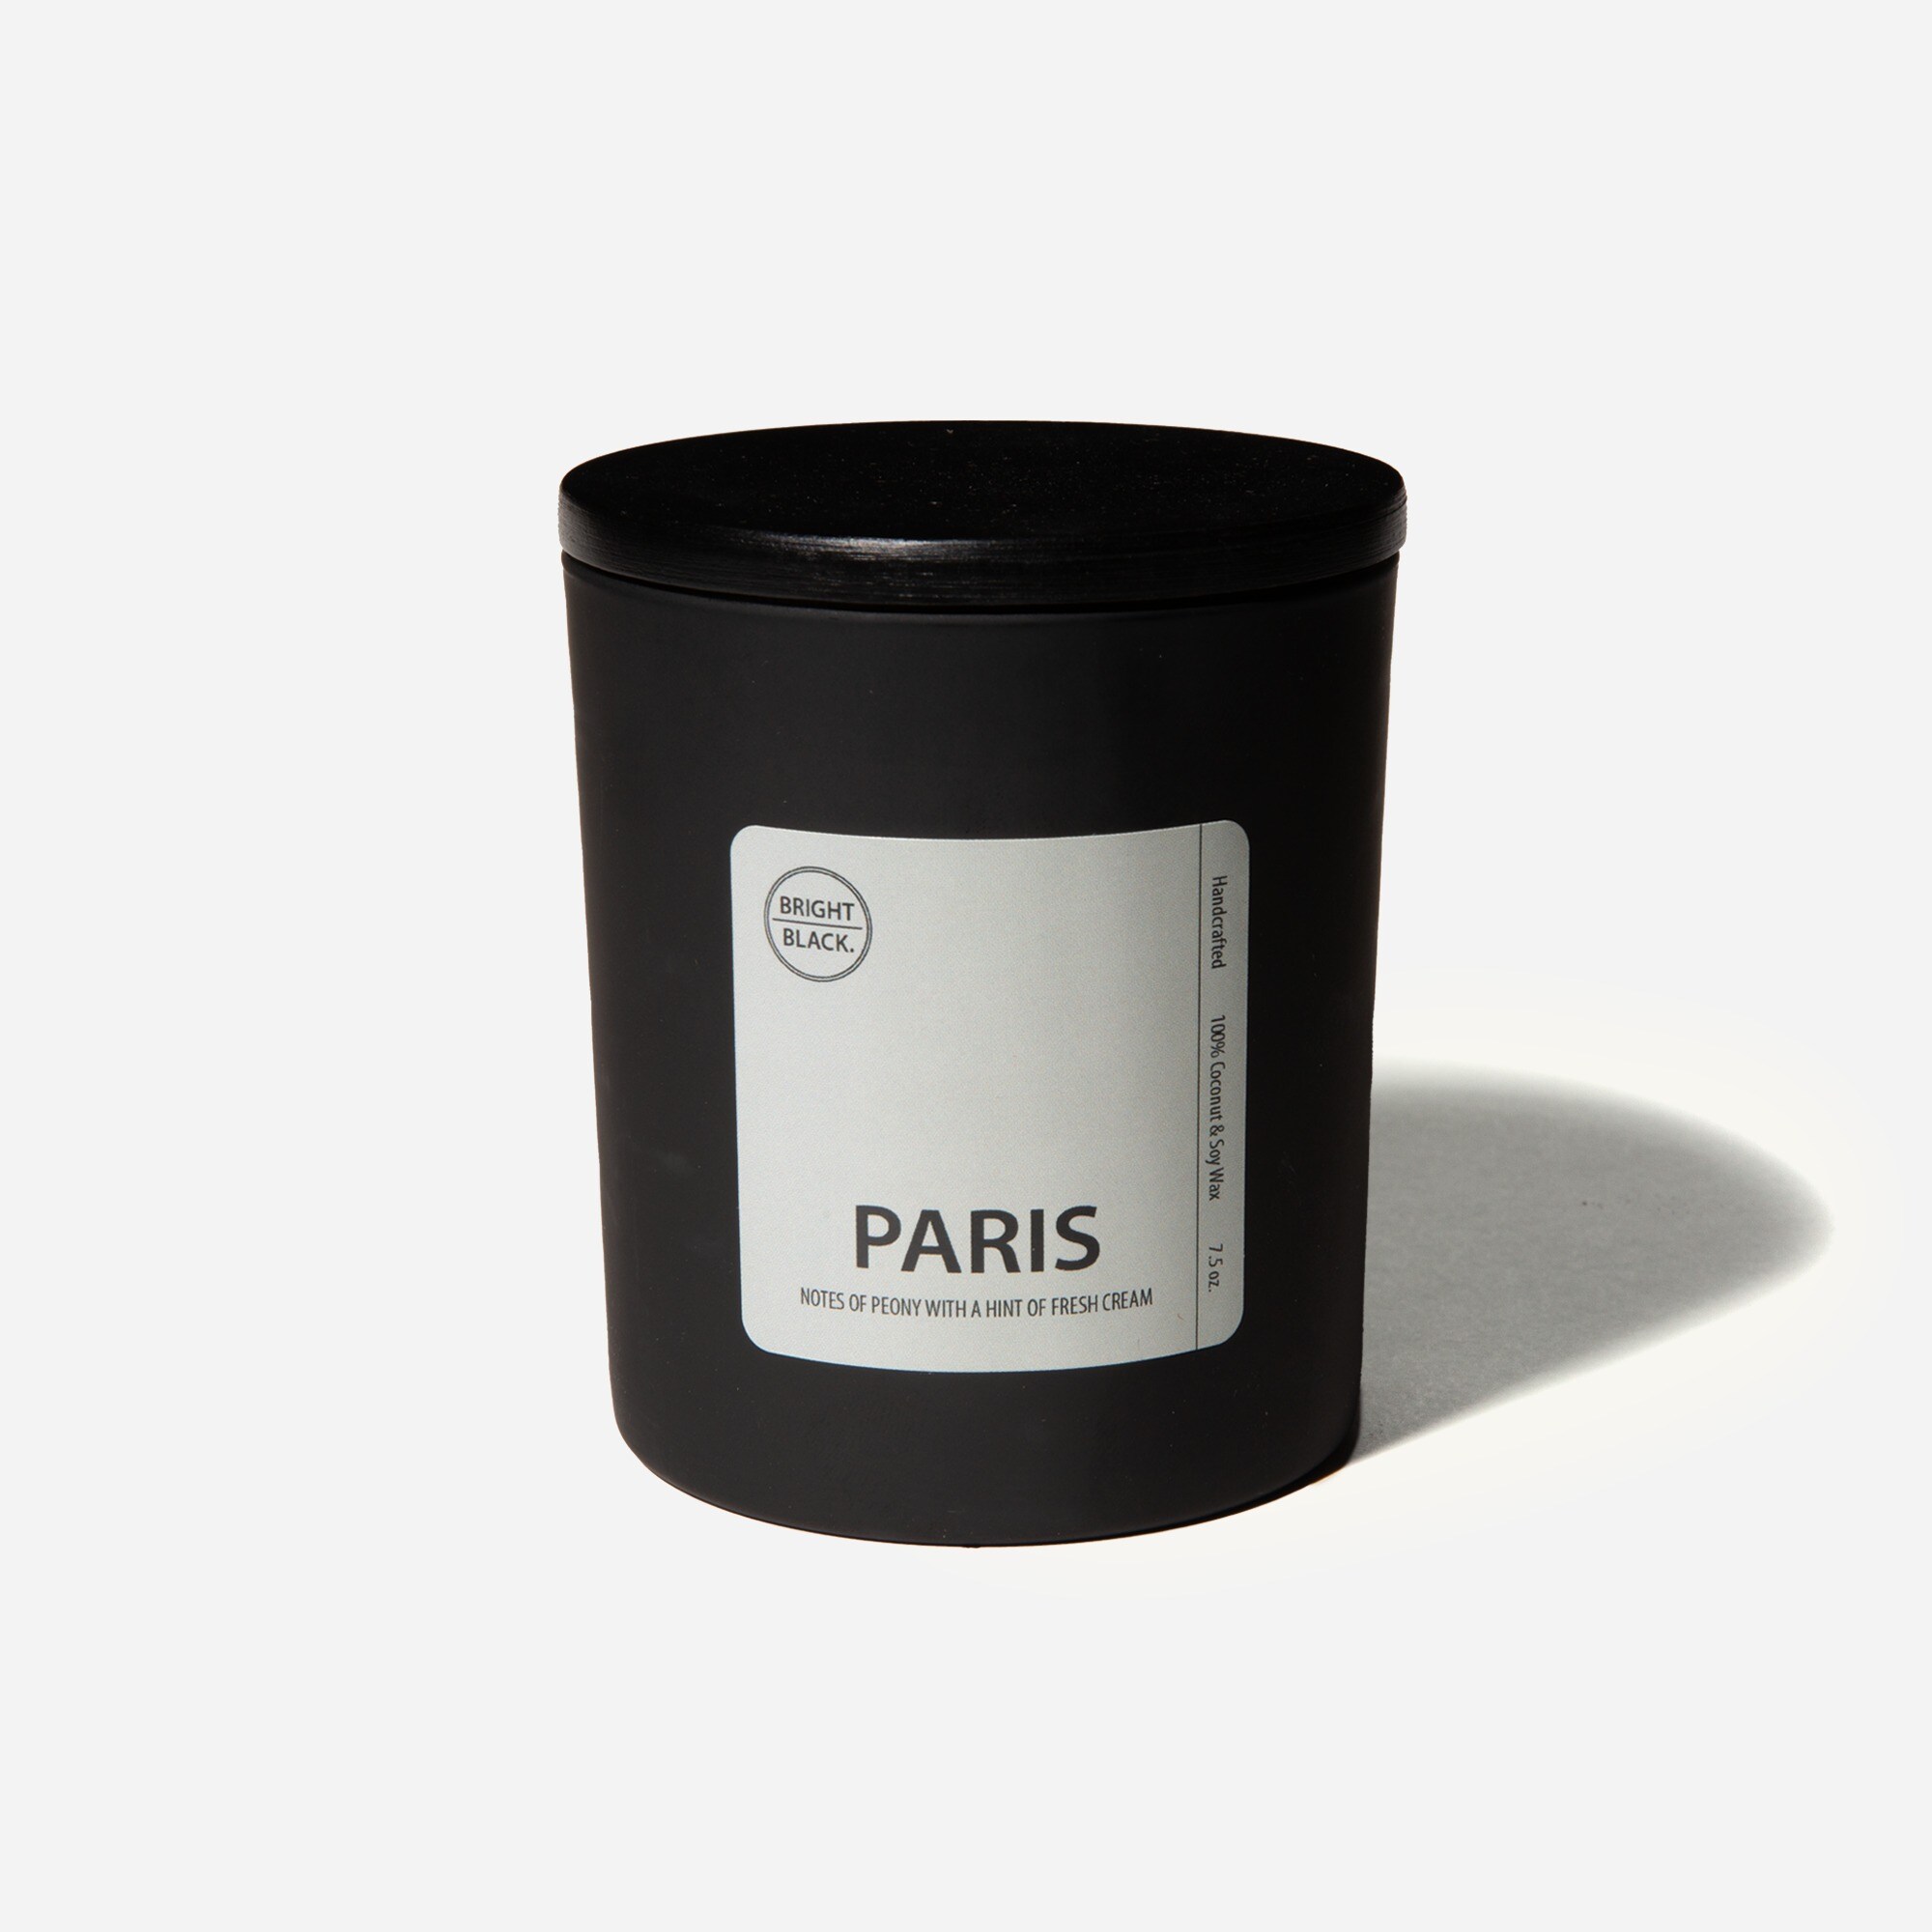  Bright Black™ Paris candle